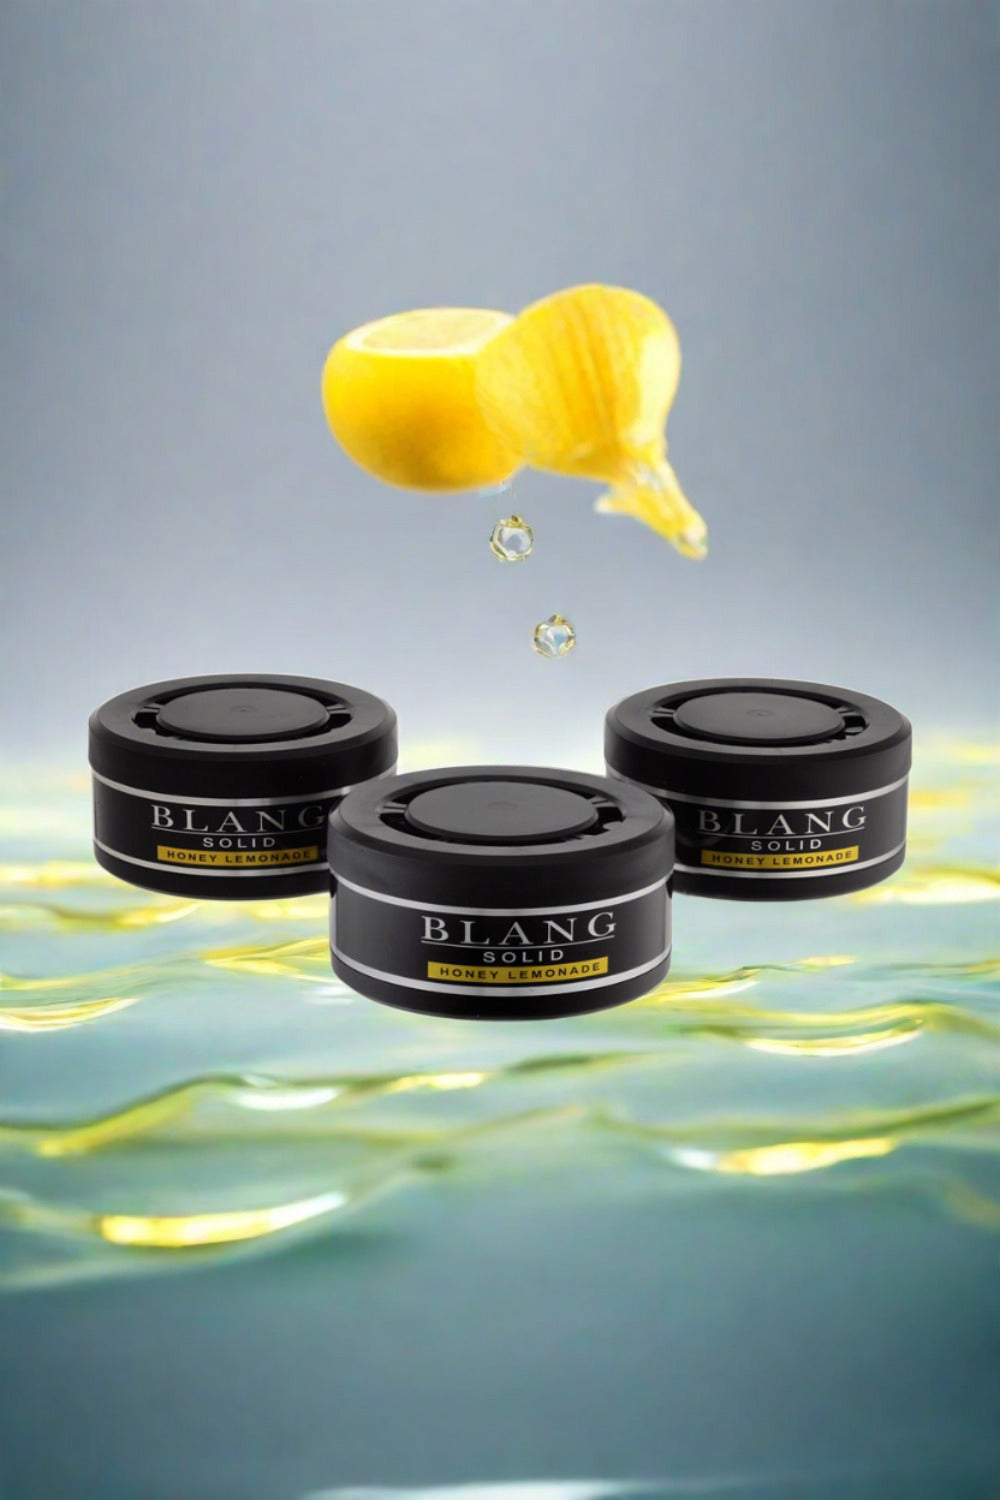 Blang Solid 3P Honey Lemonade- Pack of 3Pcs